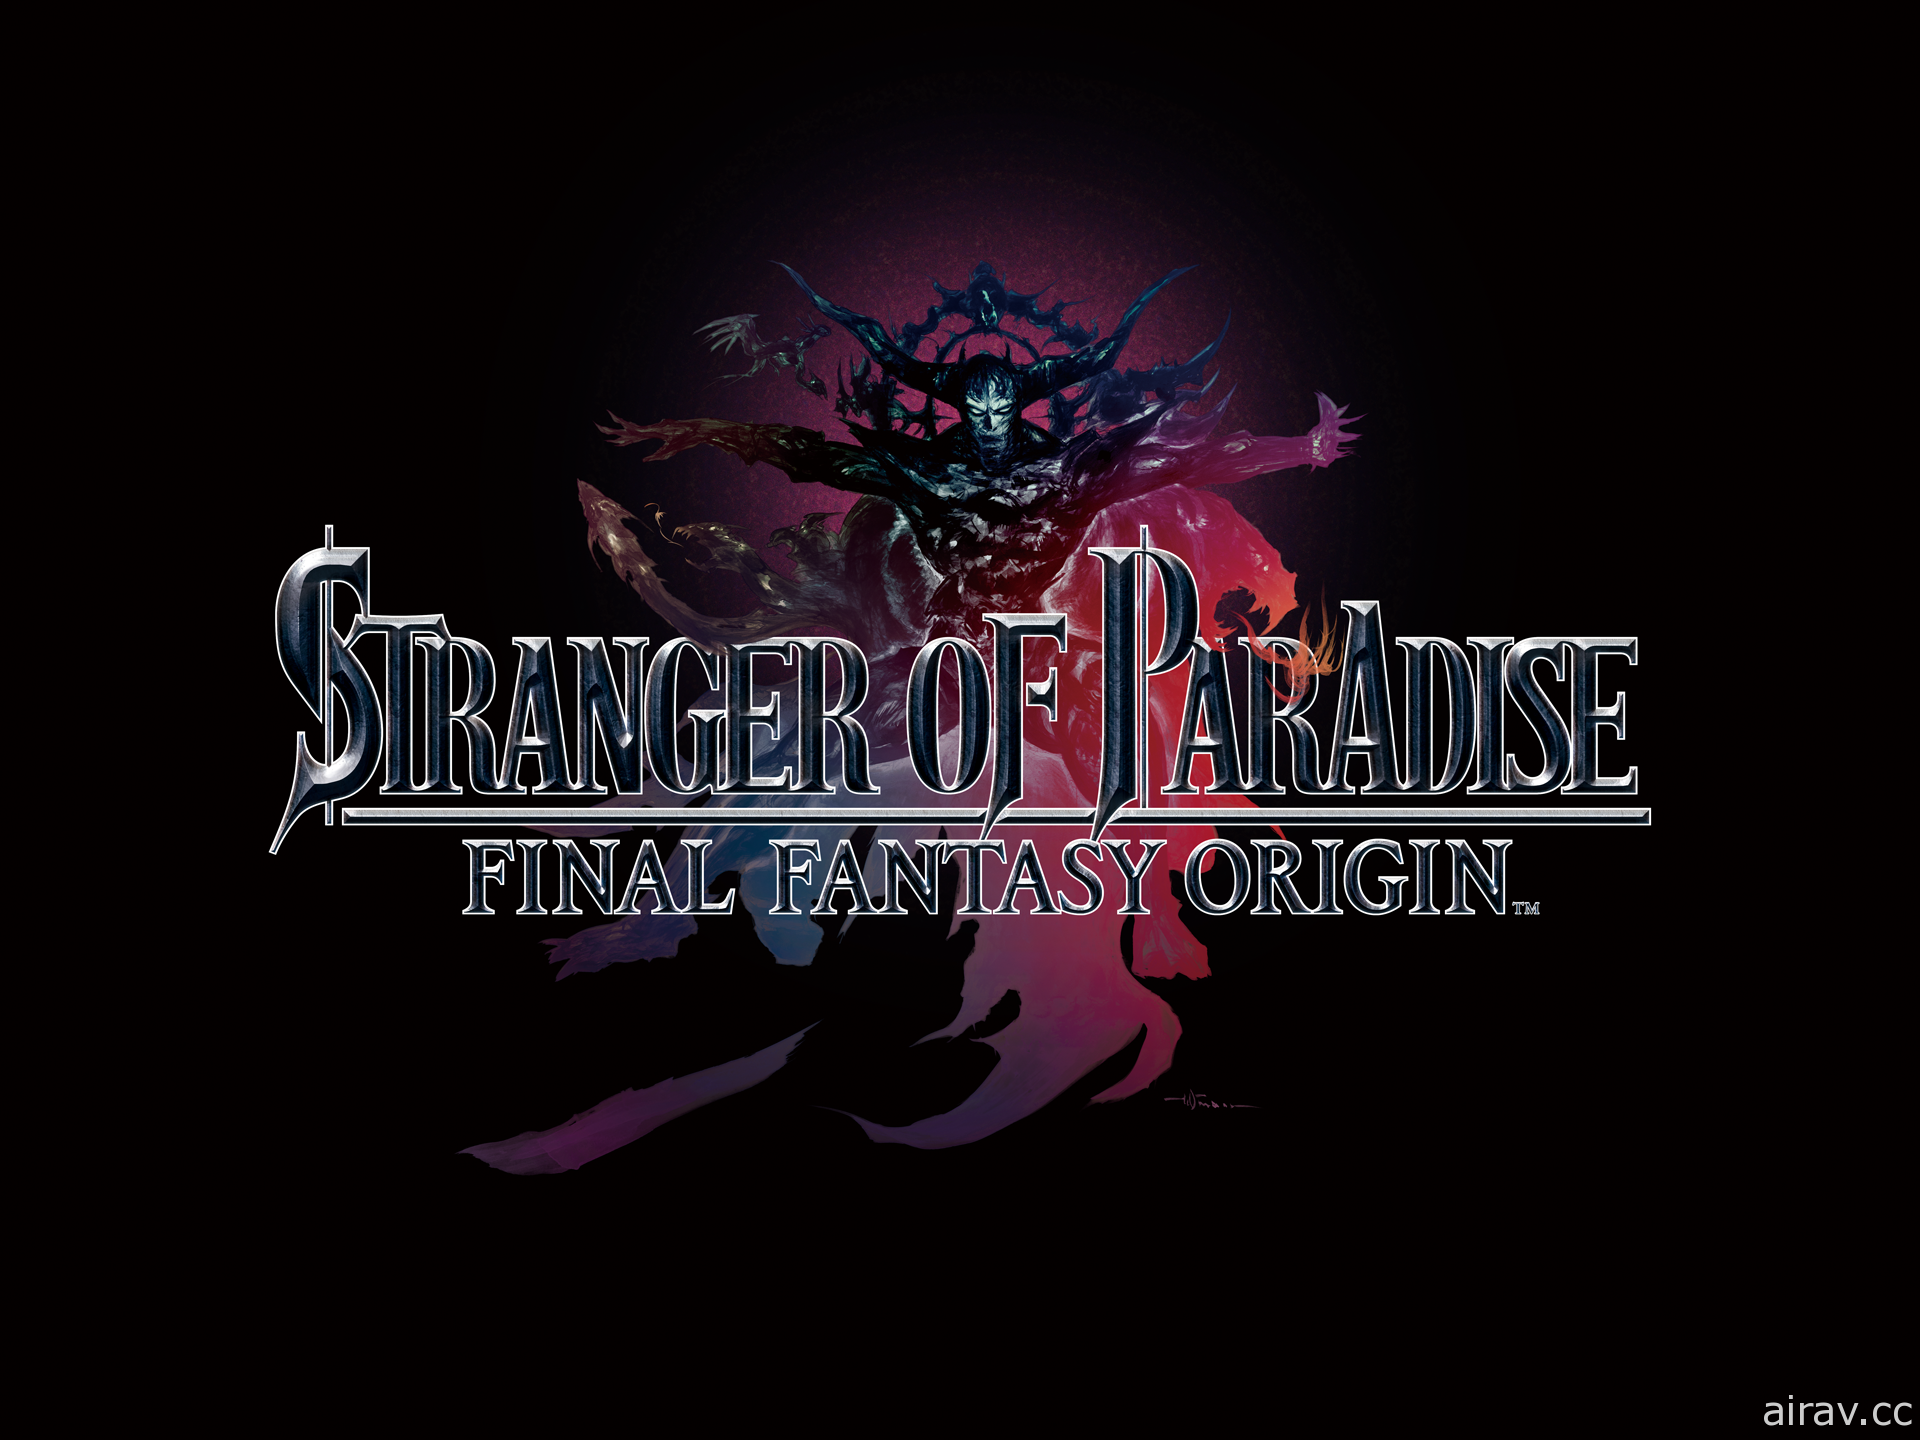 《樂園的異鄉人 Final Fantasy 起源》下載版 75 折限時優惠實施中